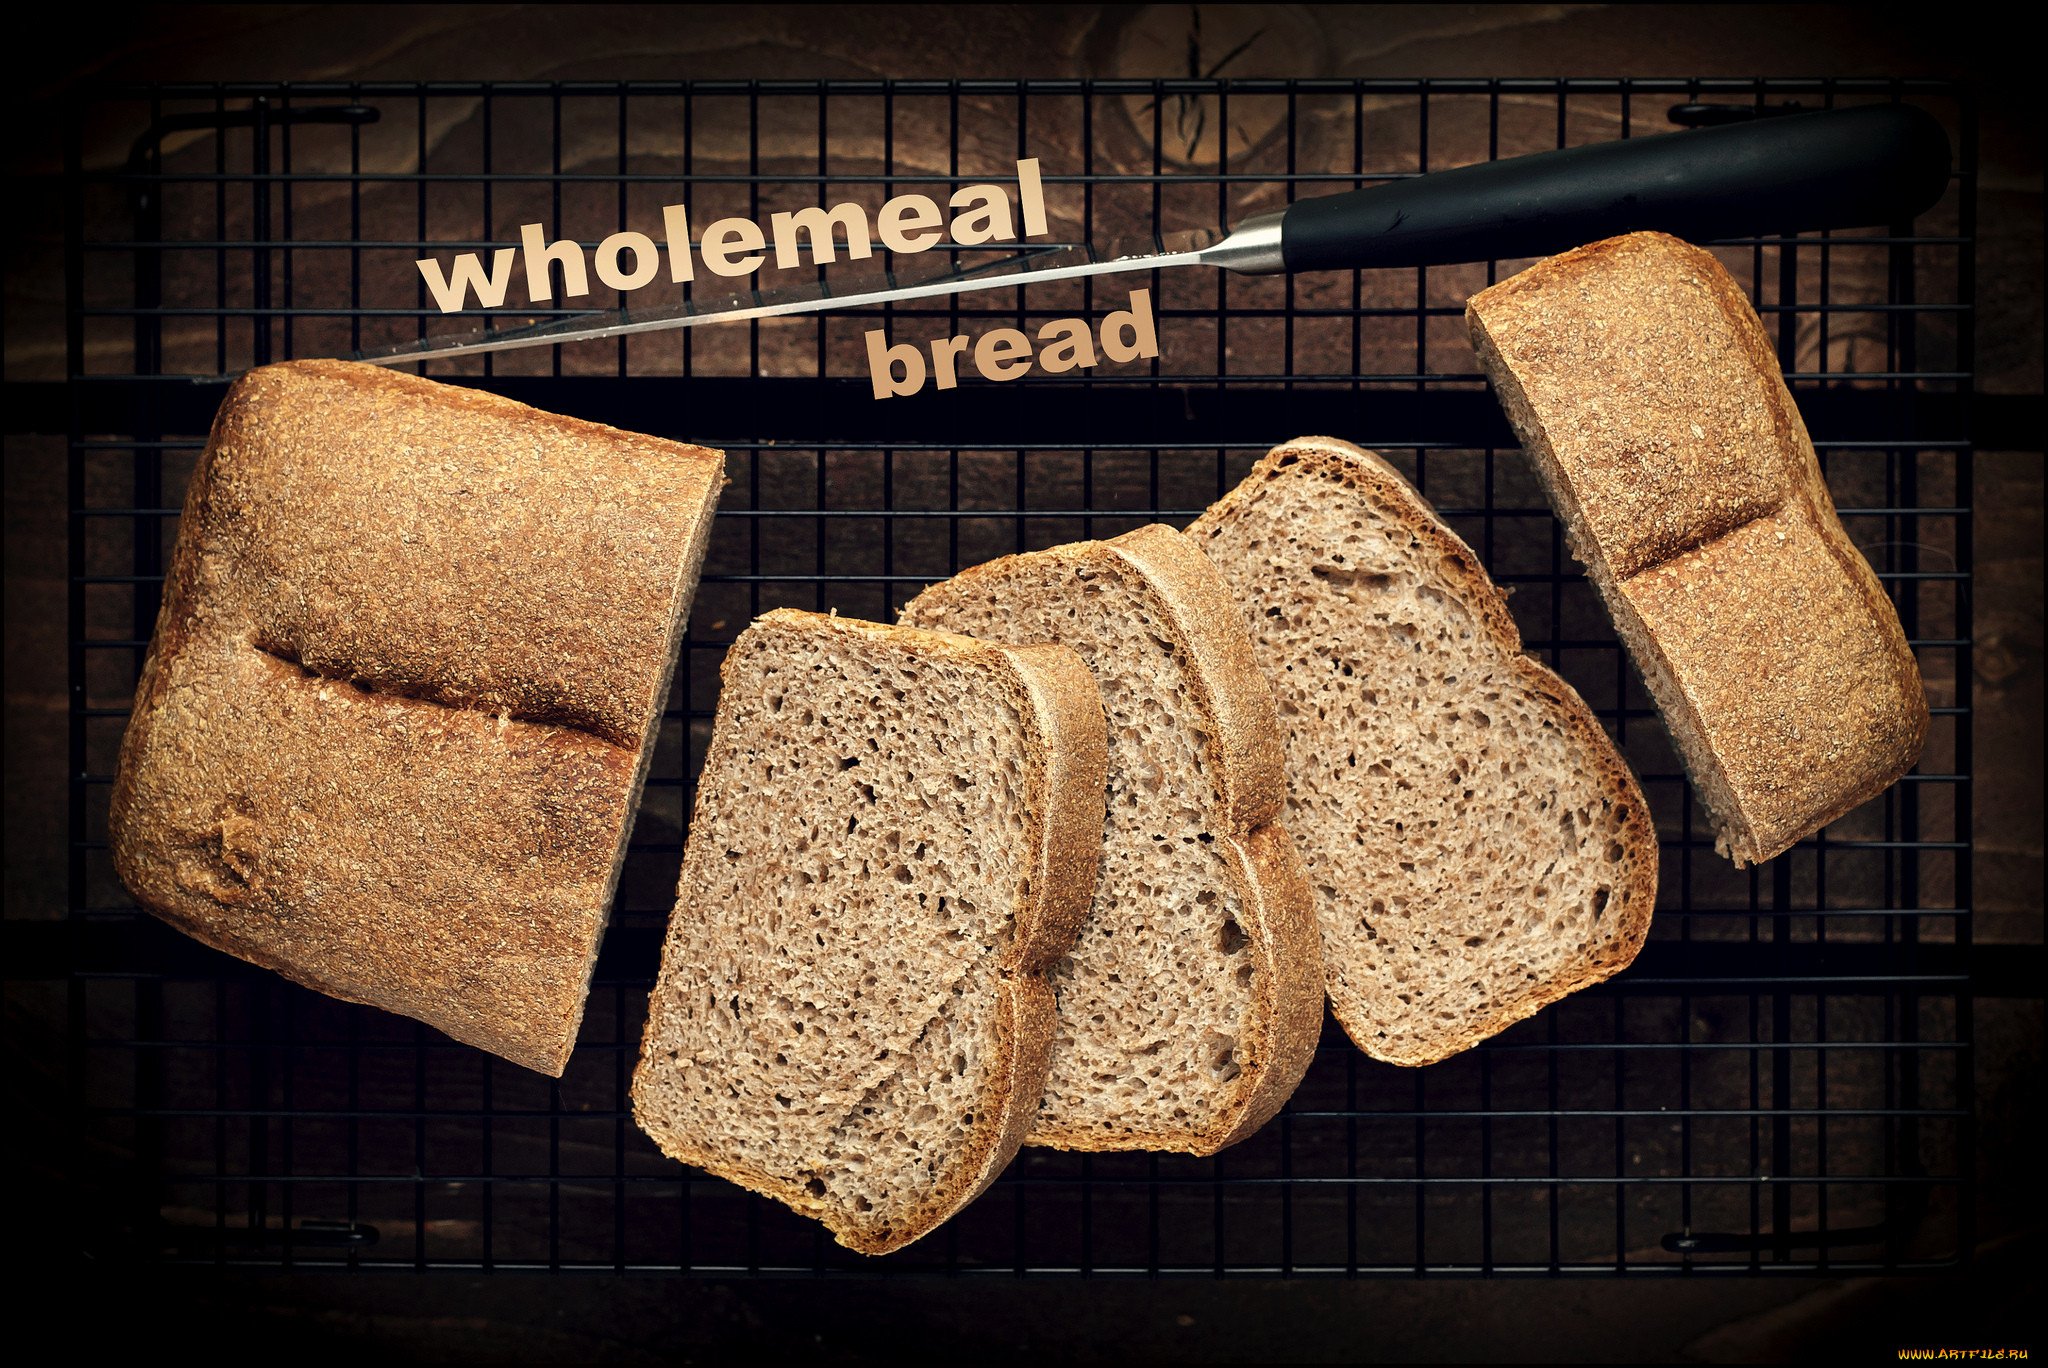 Буханка выпечка. Буханка хлеба фото. Wholemeal Bread. Форма для мини буханок хлеба. Четверо ножниц мягчайший хлеб поезжай быстрее пить